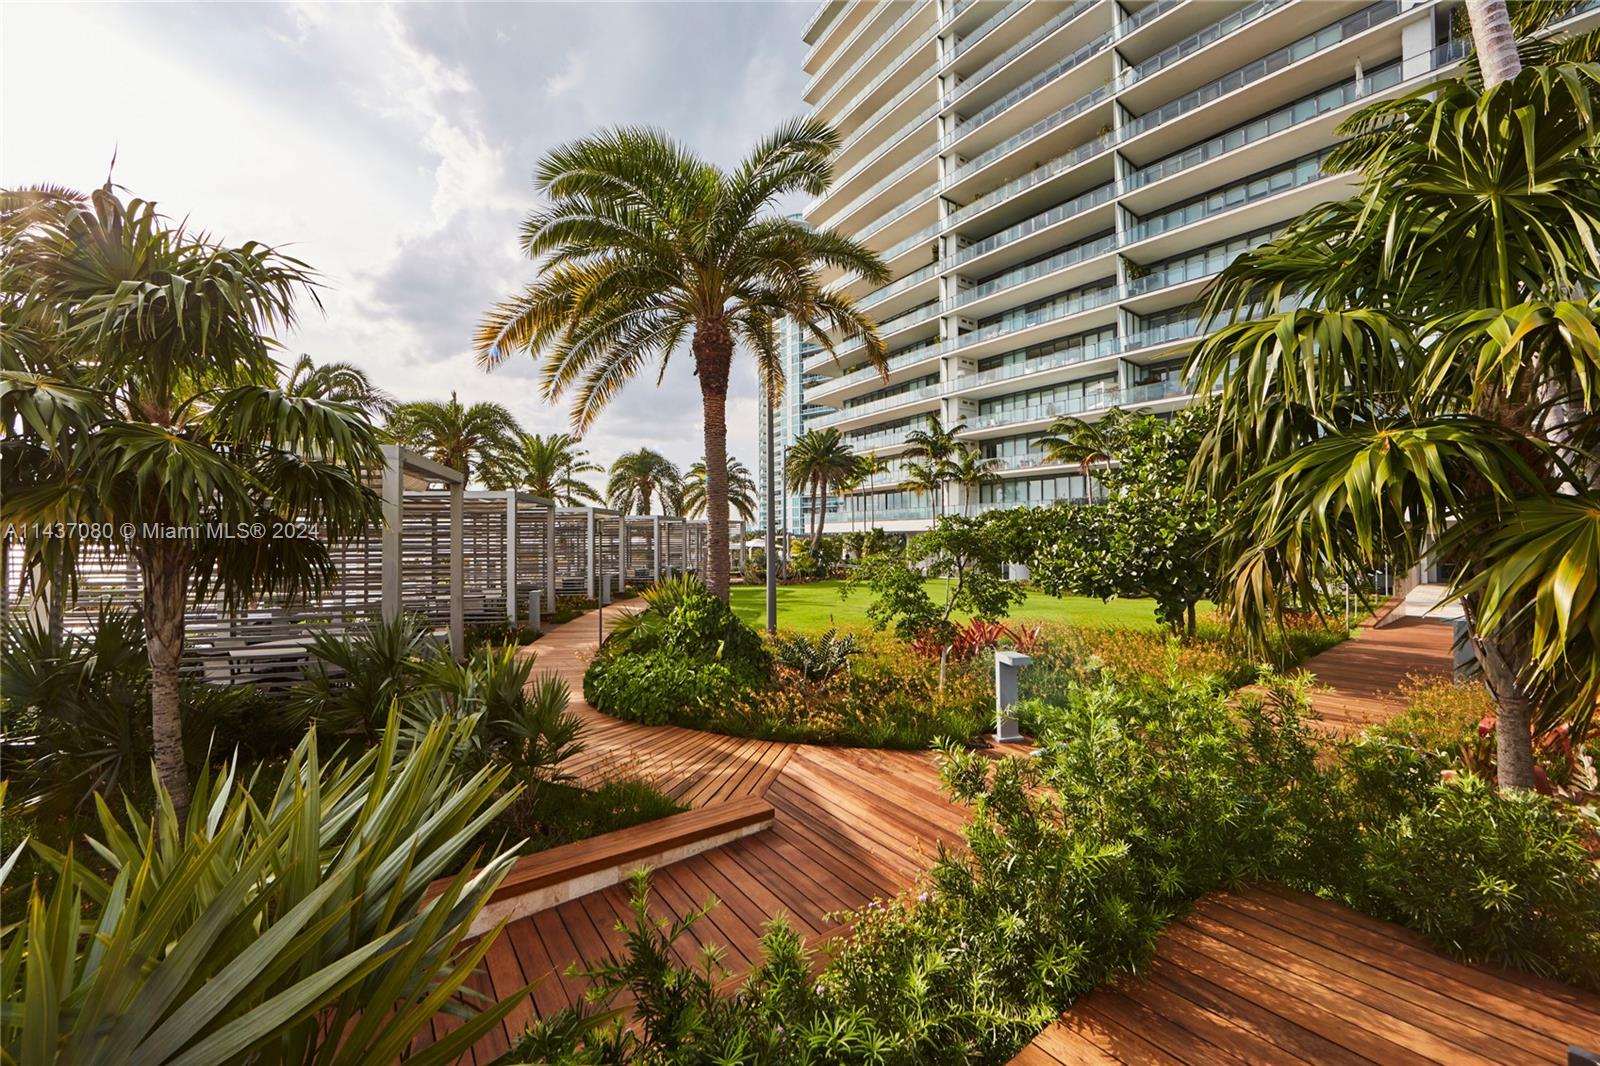 Residential, Miami Beach, Florida image 43